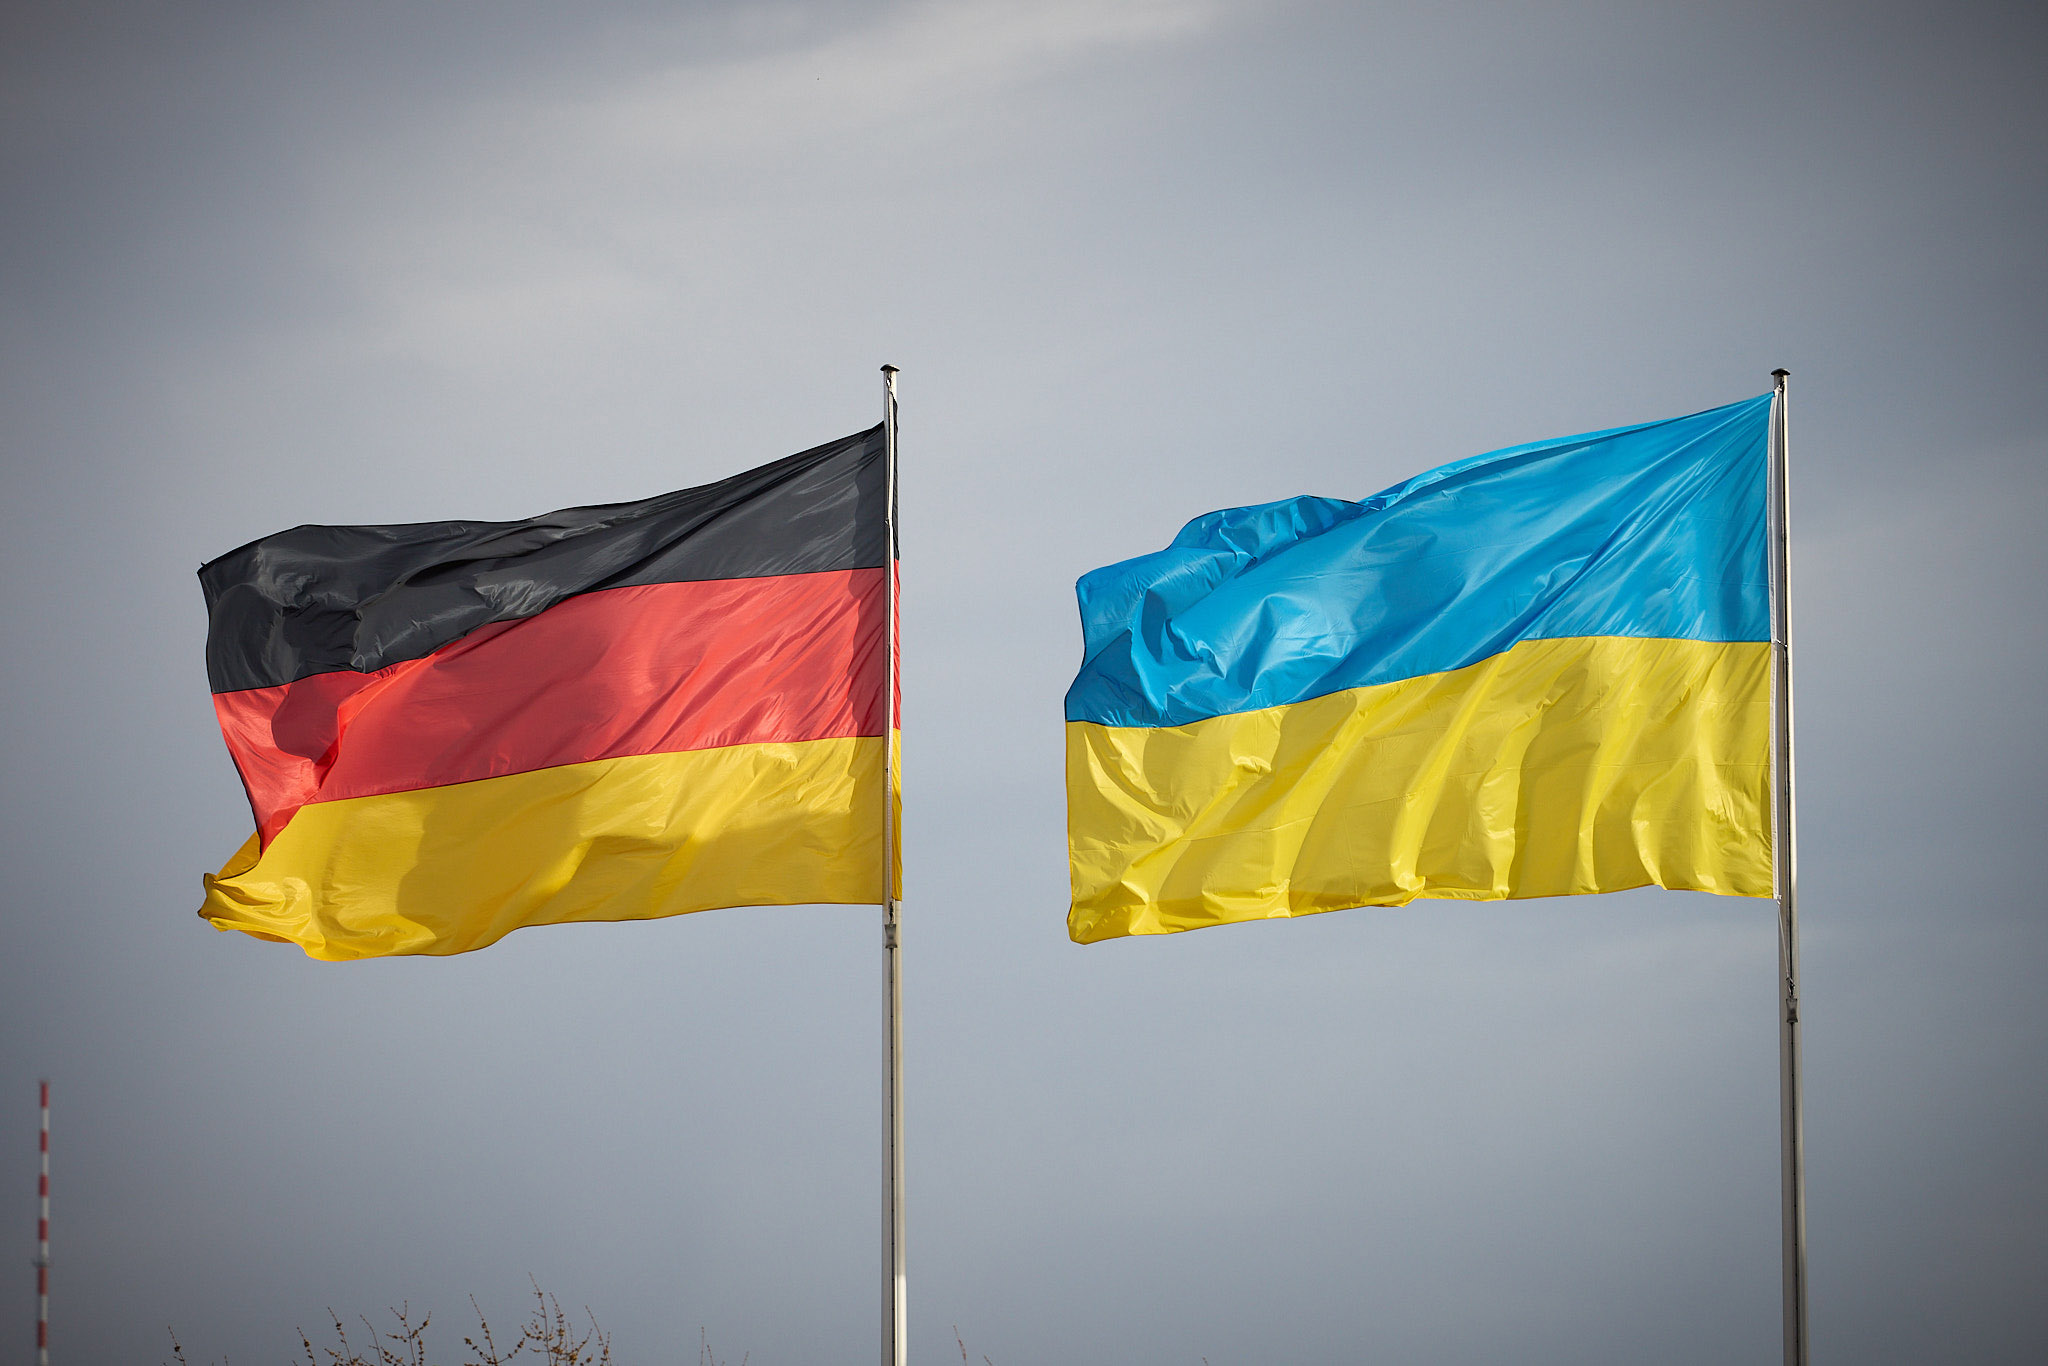 Olaf Scholz spune că ucrainenii cu locuri de muncă în Germania pot rămâne în ţară